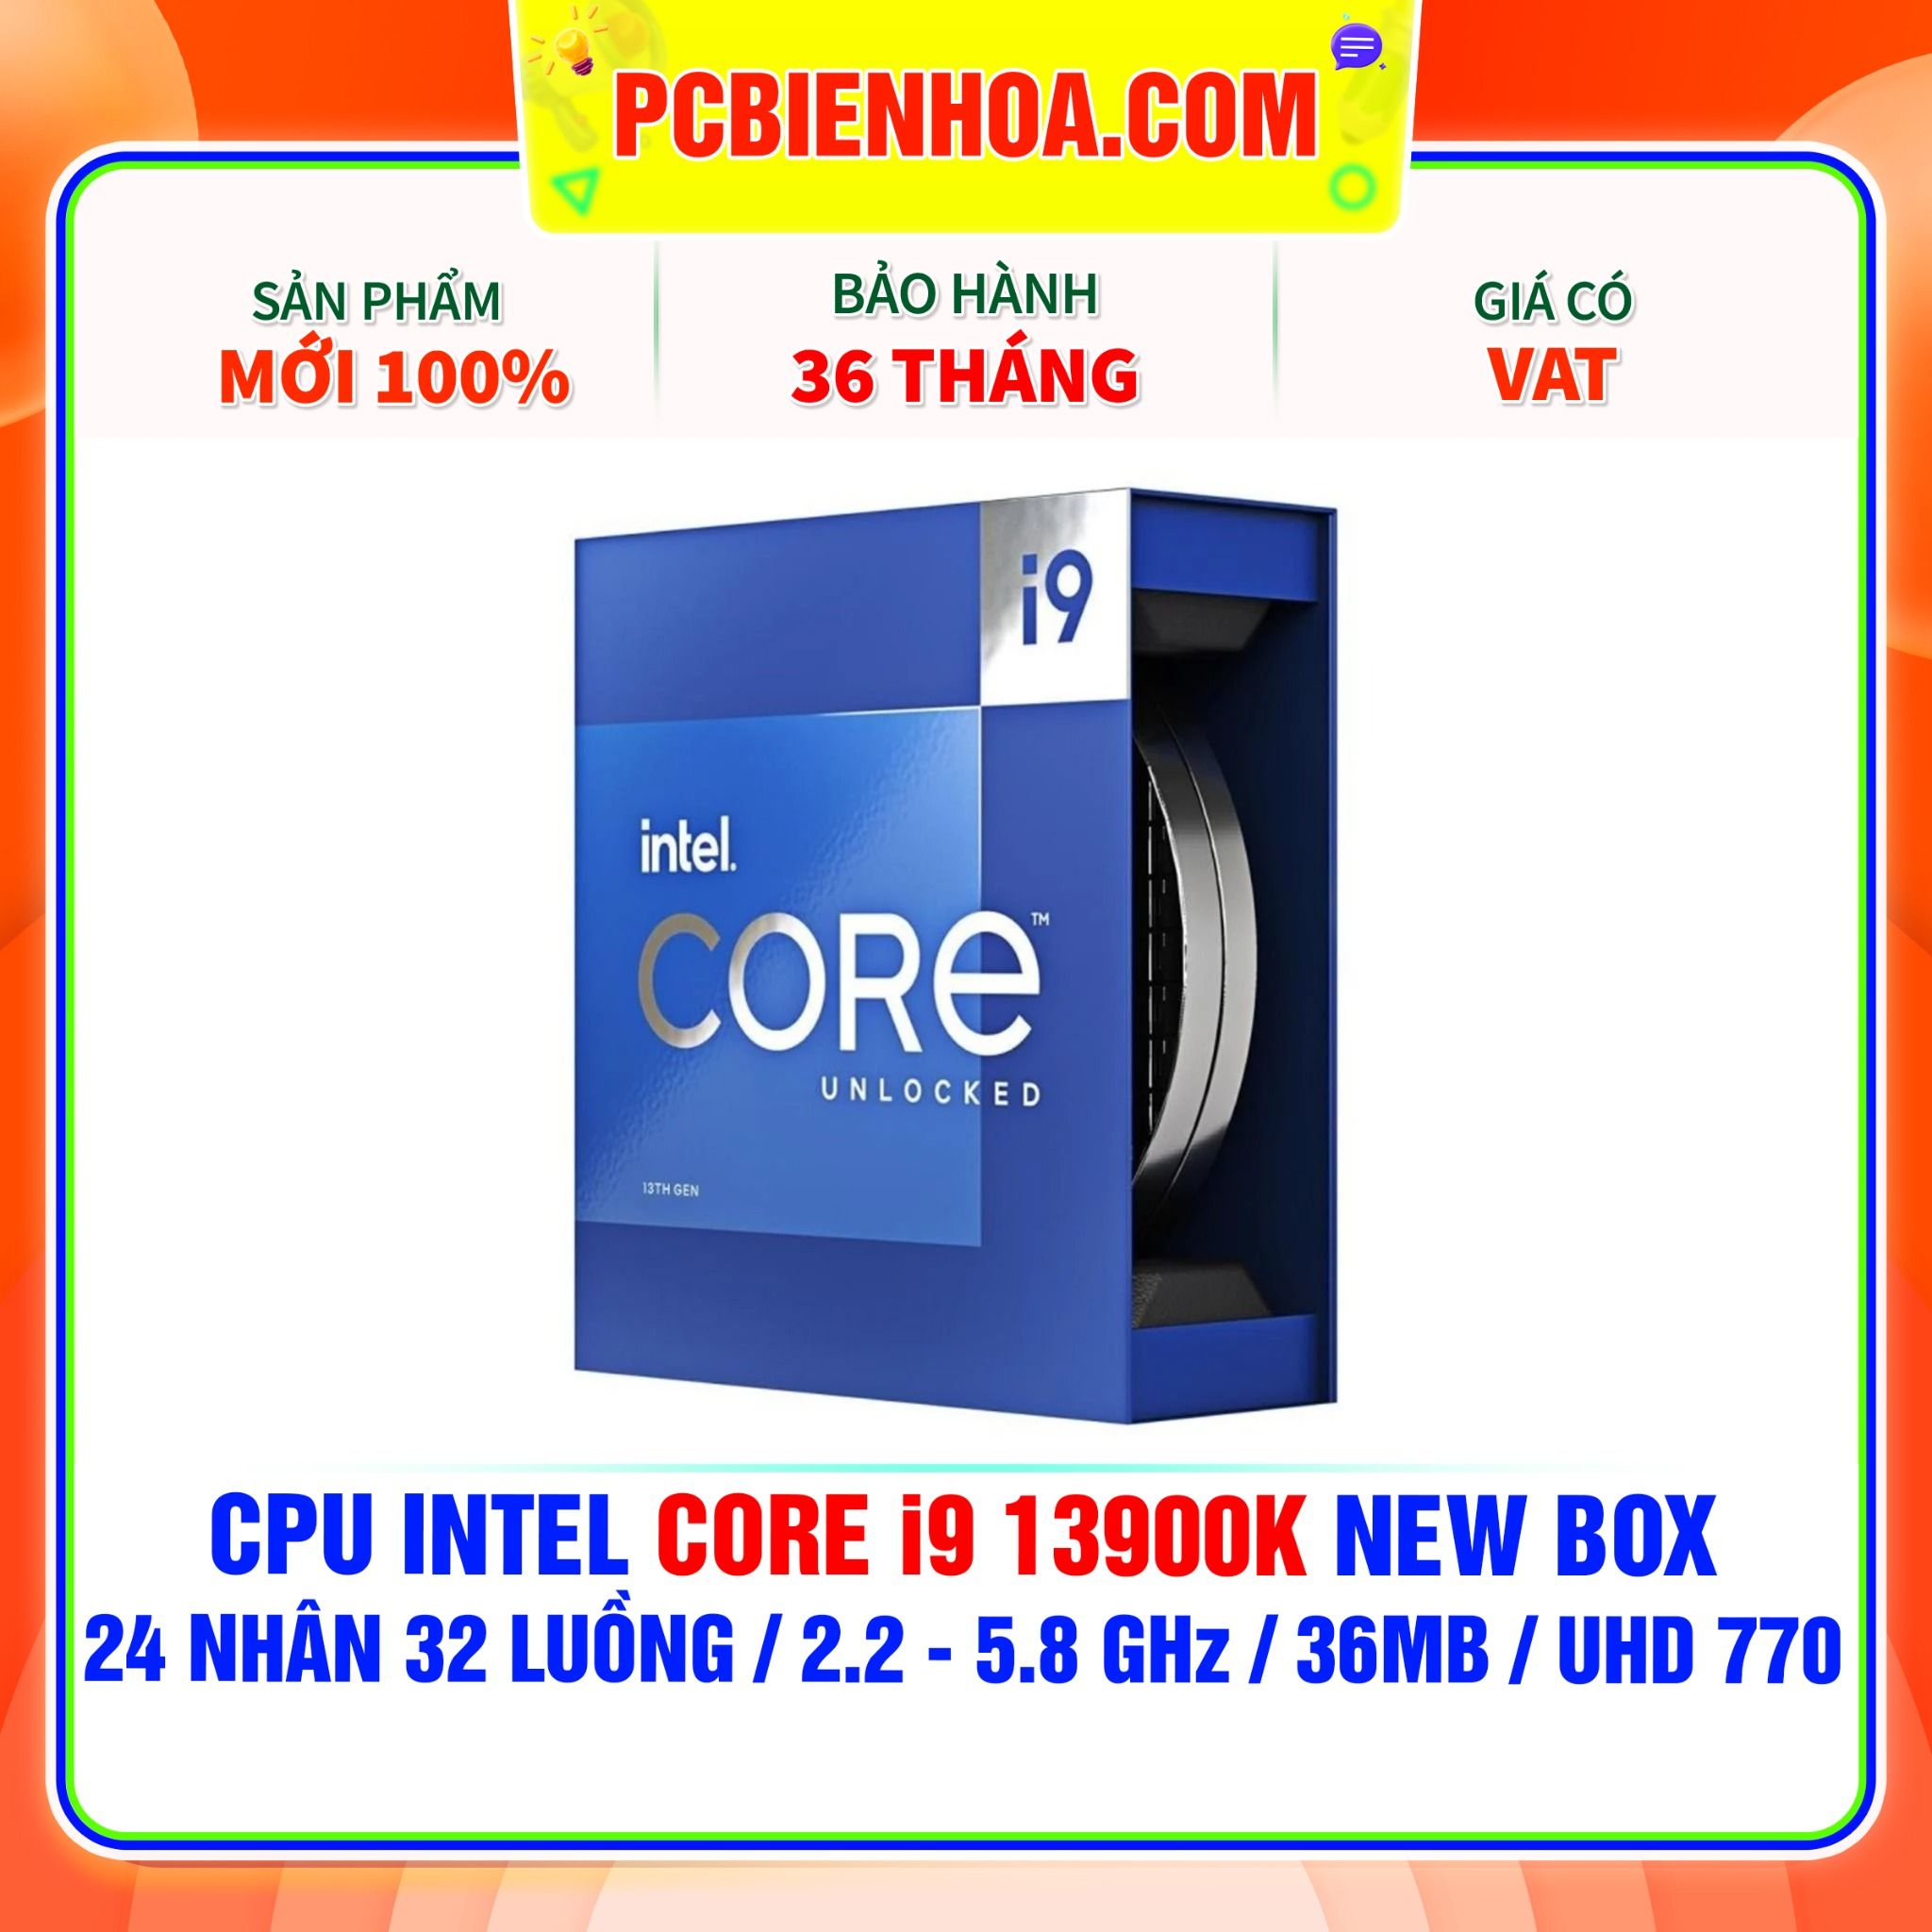  CPU INTEL CORE i9 13900K NEW BOX ( 24 NHÂN 32 LUỒNG / 2.2 - 5.8 GHz / 36MB / INTEL® UHD GRAPHICS 770 ) 